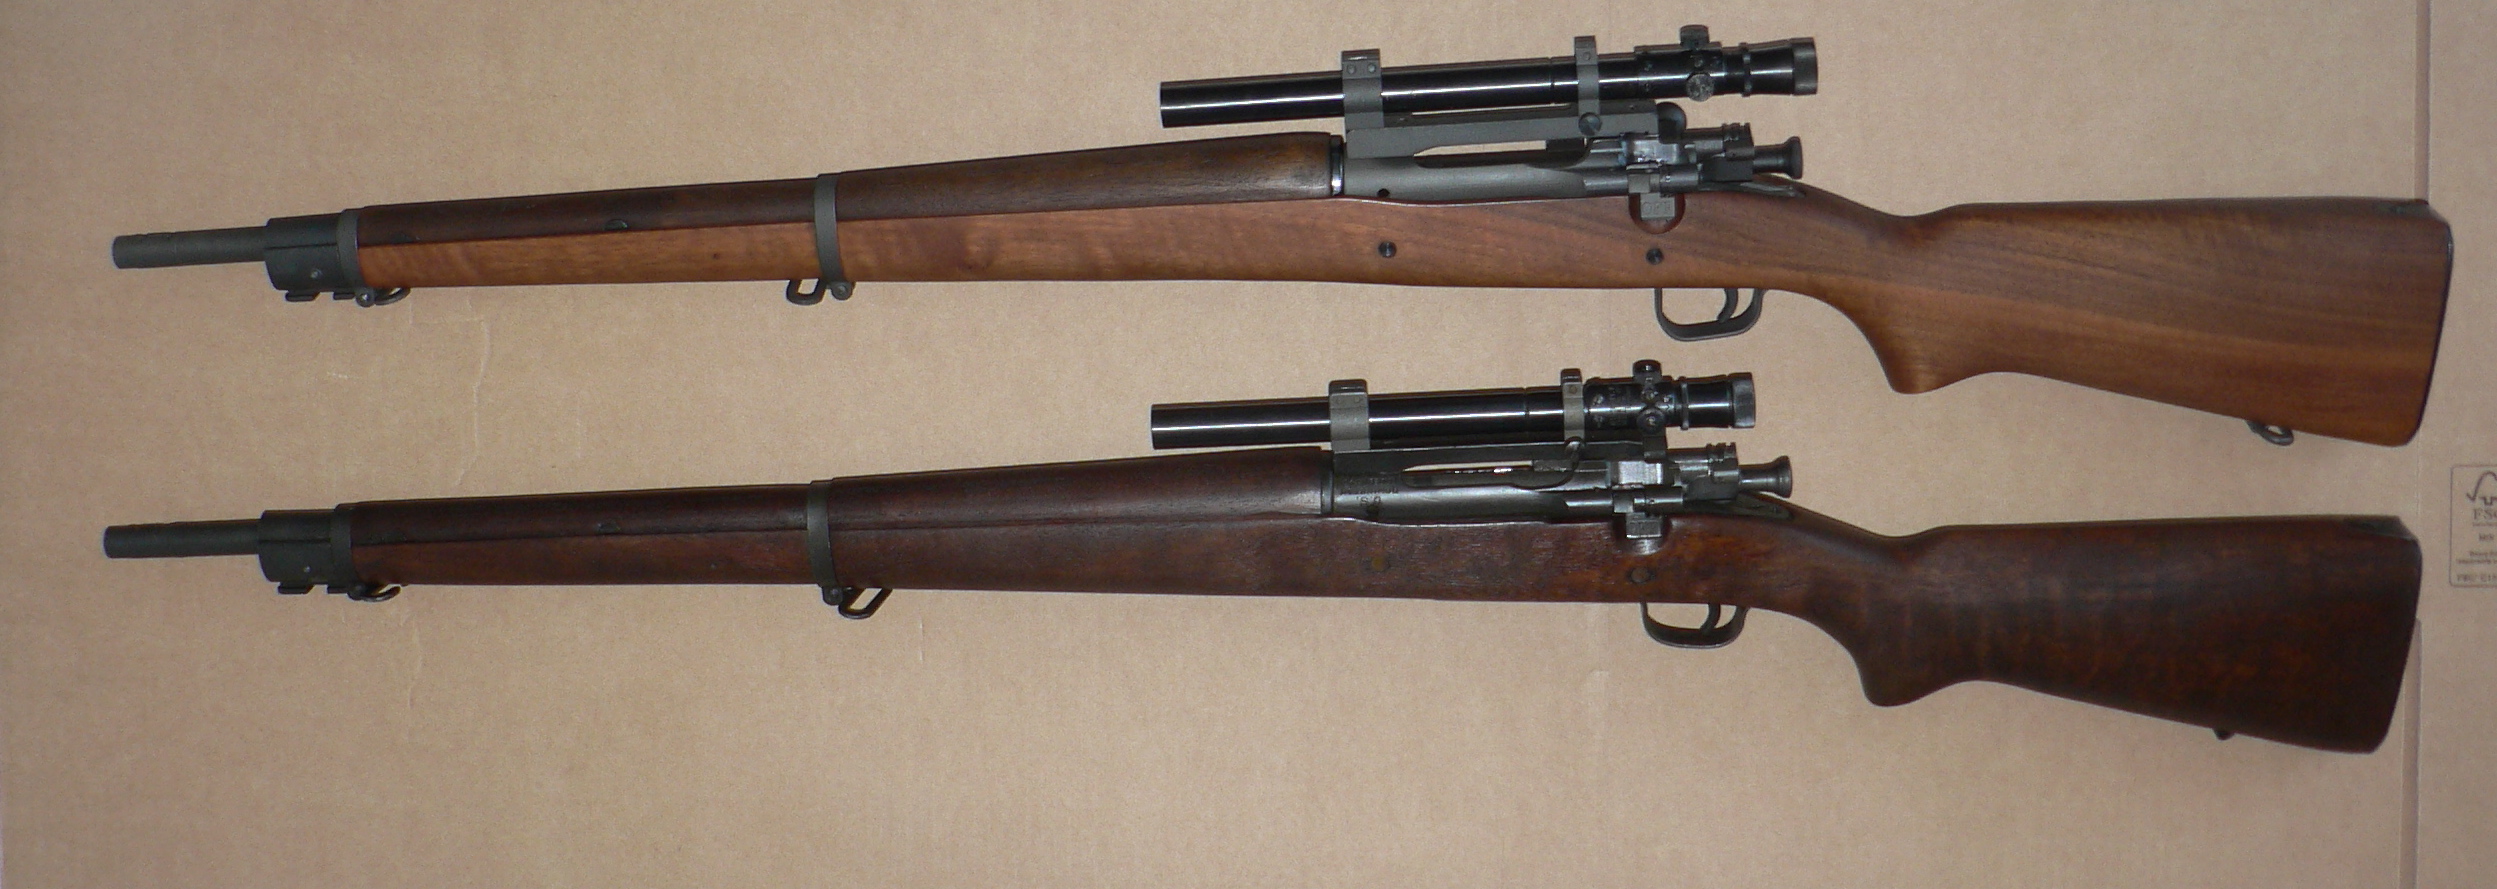 Un des fusils des tireurs d'elites US le 1903 A4 en 30/06 22051309352722998617891994